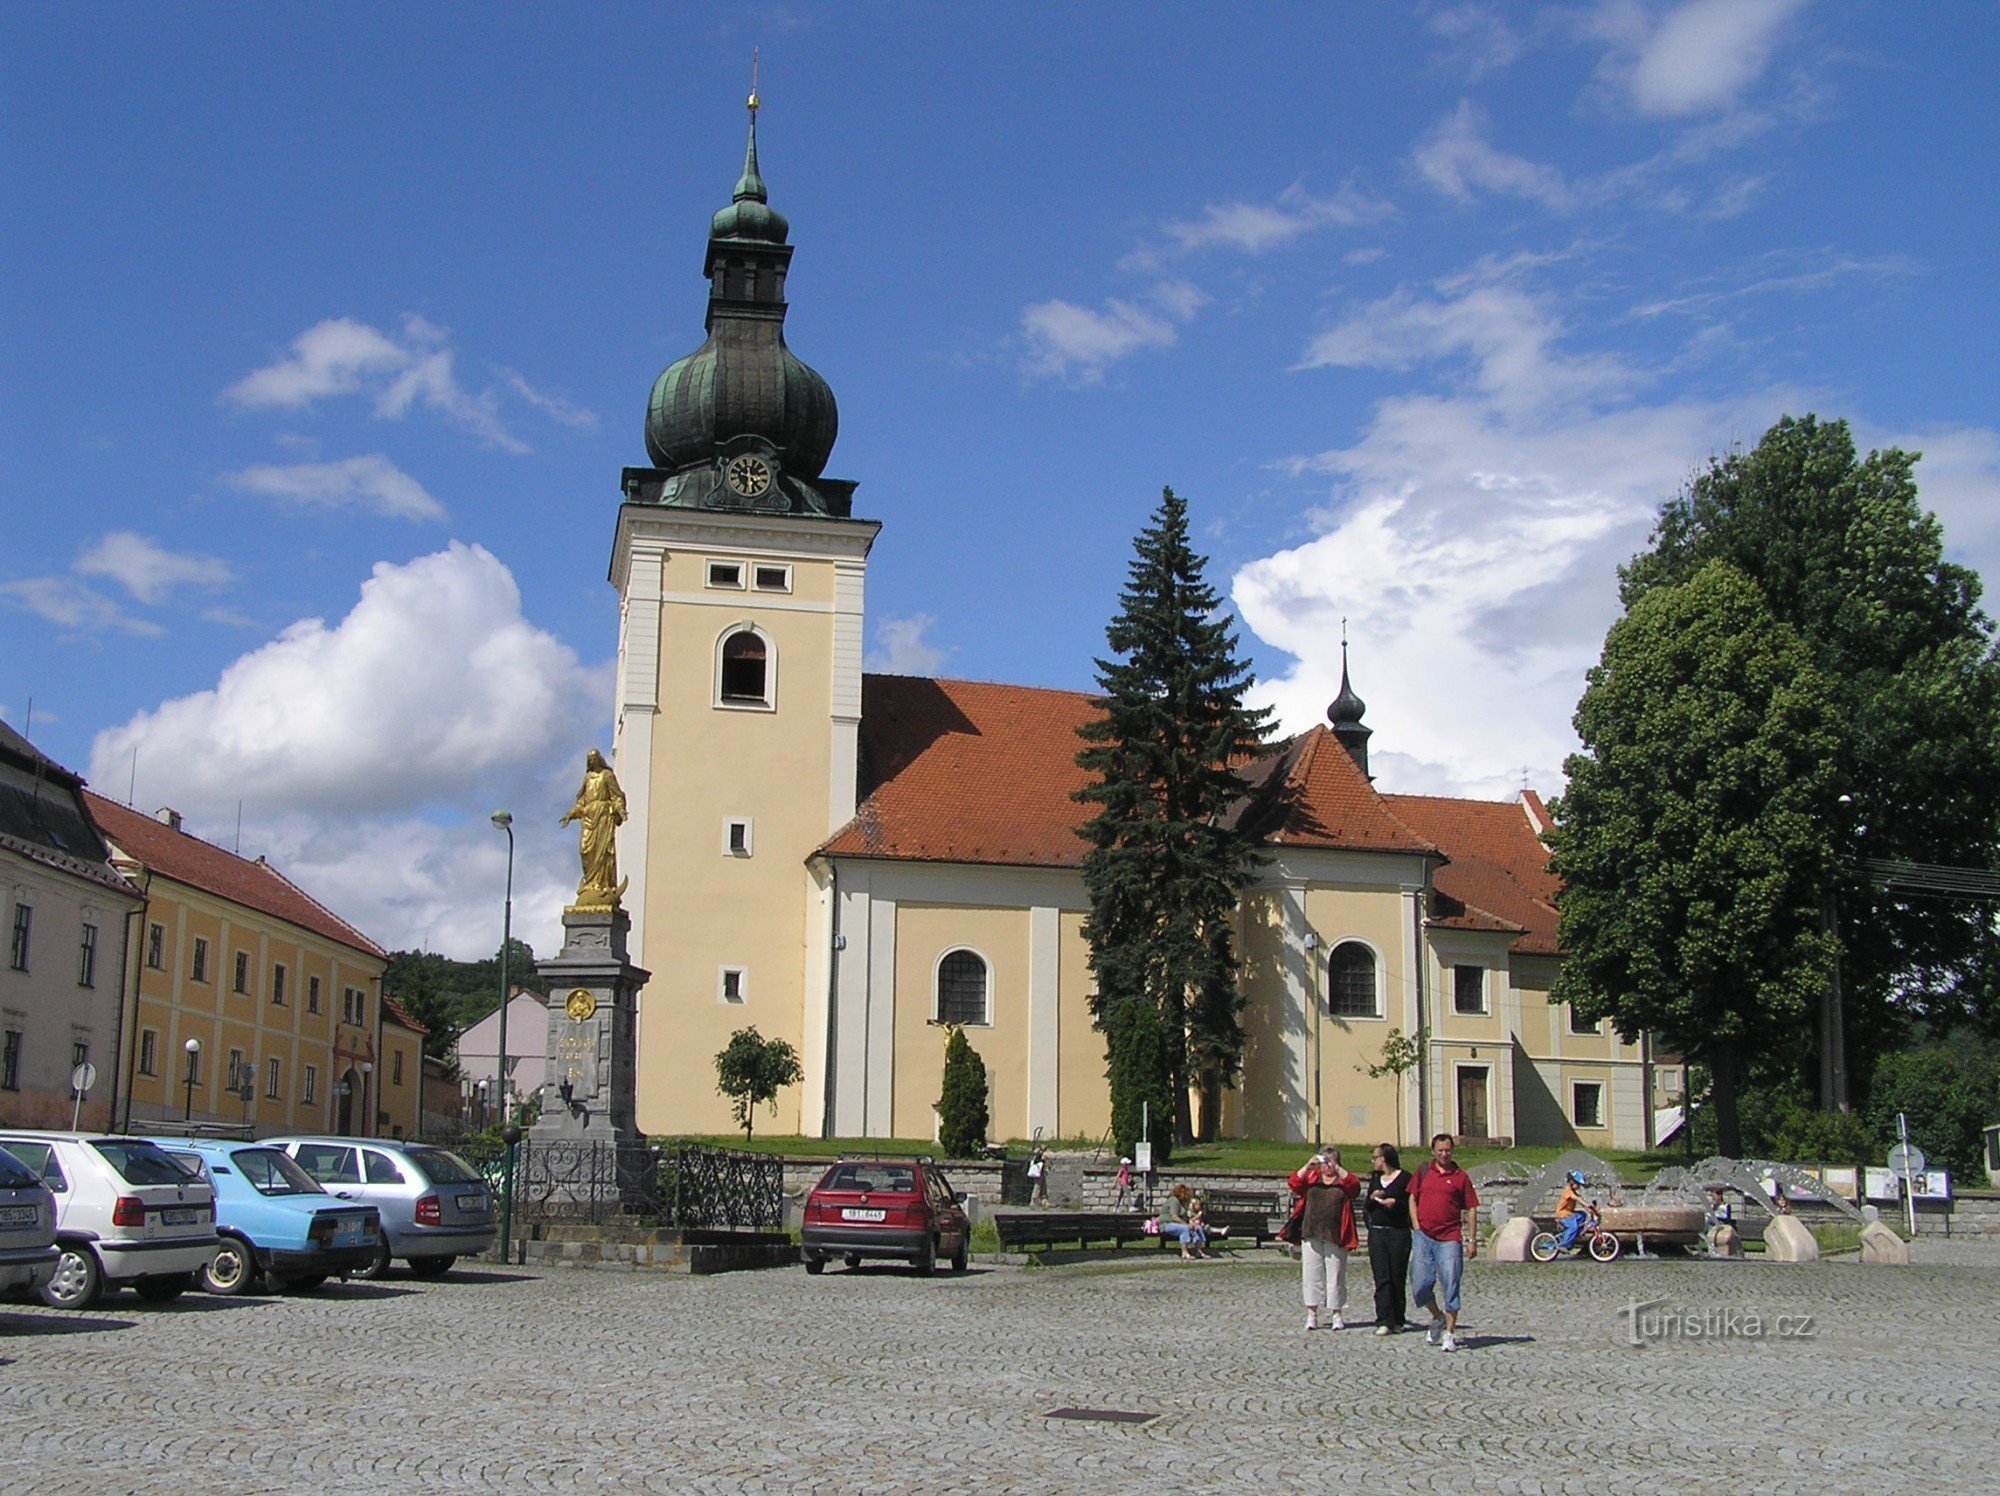 Kunsztat - Kościół św. Stanisław (lipiec 2009)